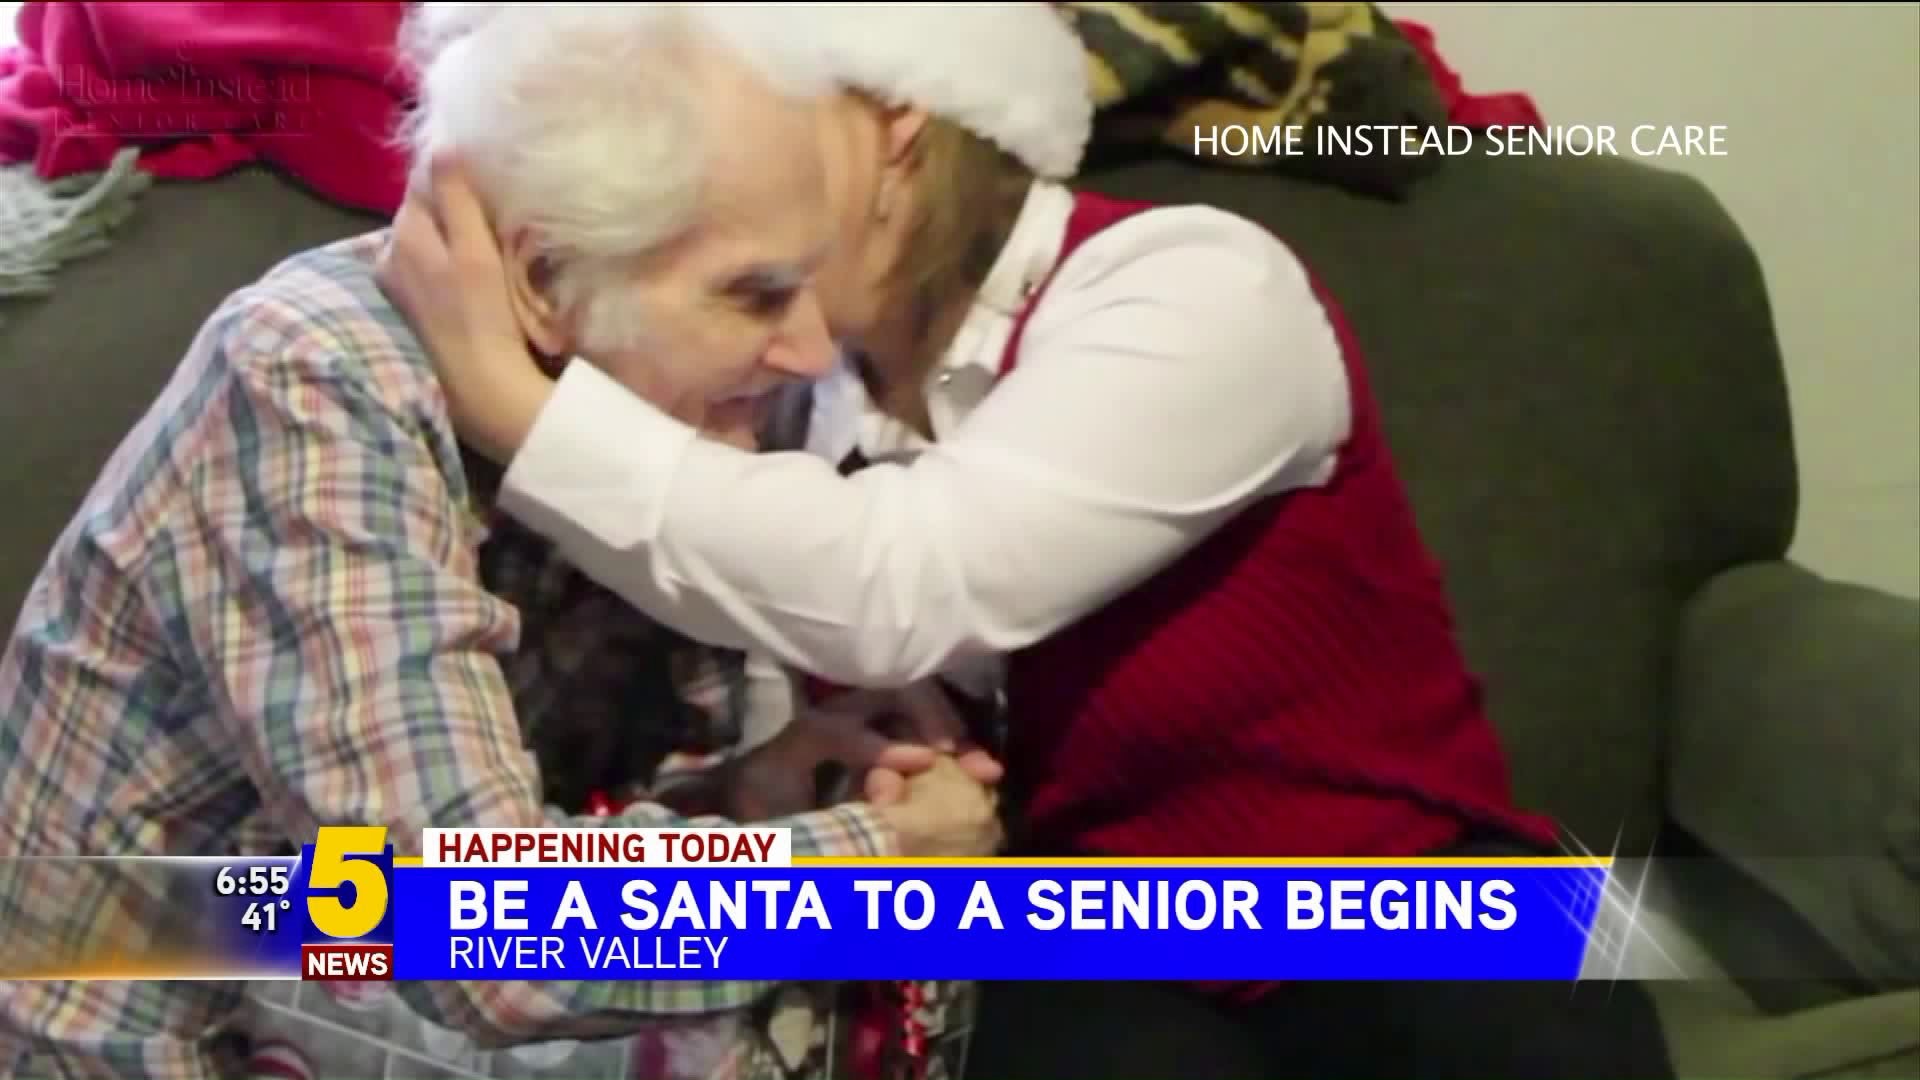 Be A Santa To A Senior